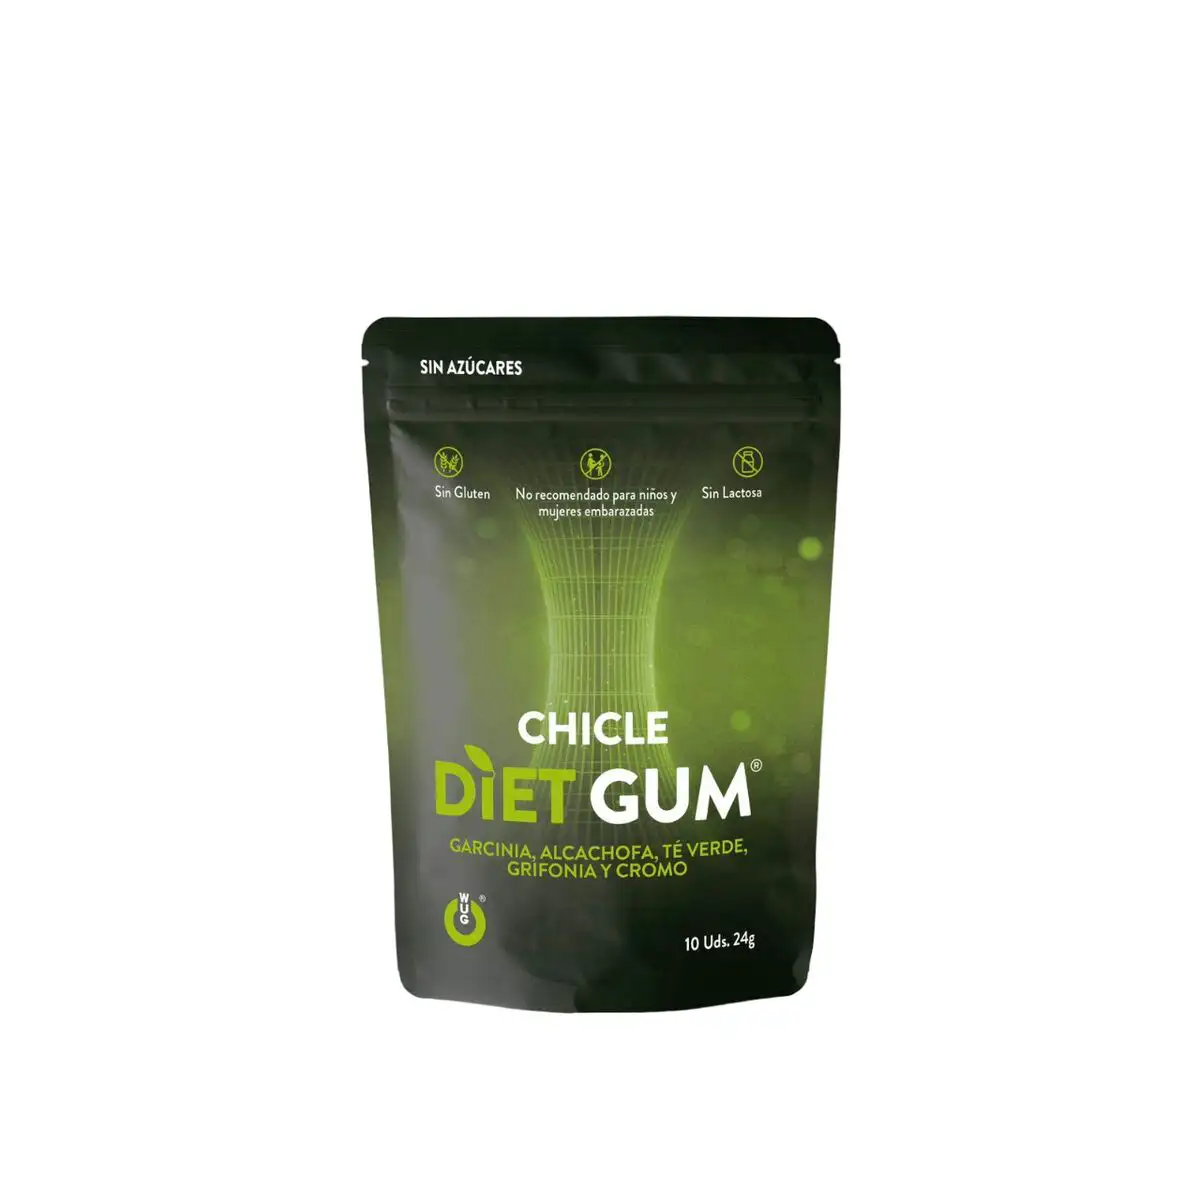 Chewing gum wug diet gum 24 g_8083. DIAYTAR SENEGAL - L'Art de Choisir, l'Art de Vivre. Parcourez notre boutique en ligne et découvrez des produits qui transforment chaque choix en une expérience enrichissante.